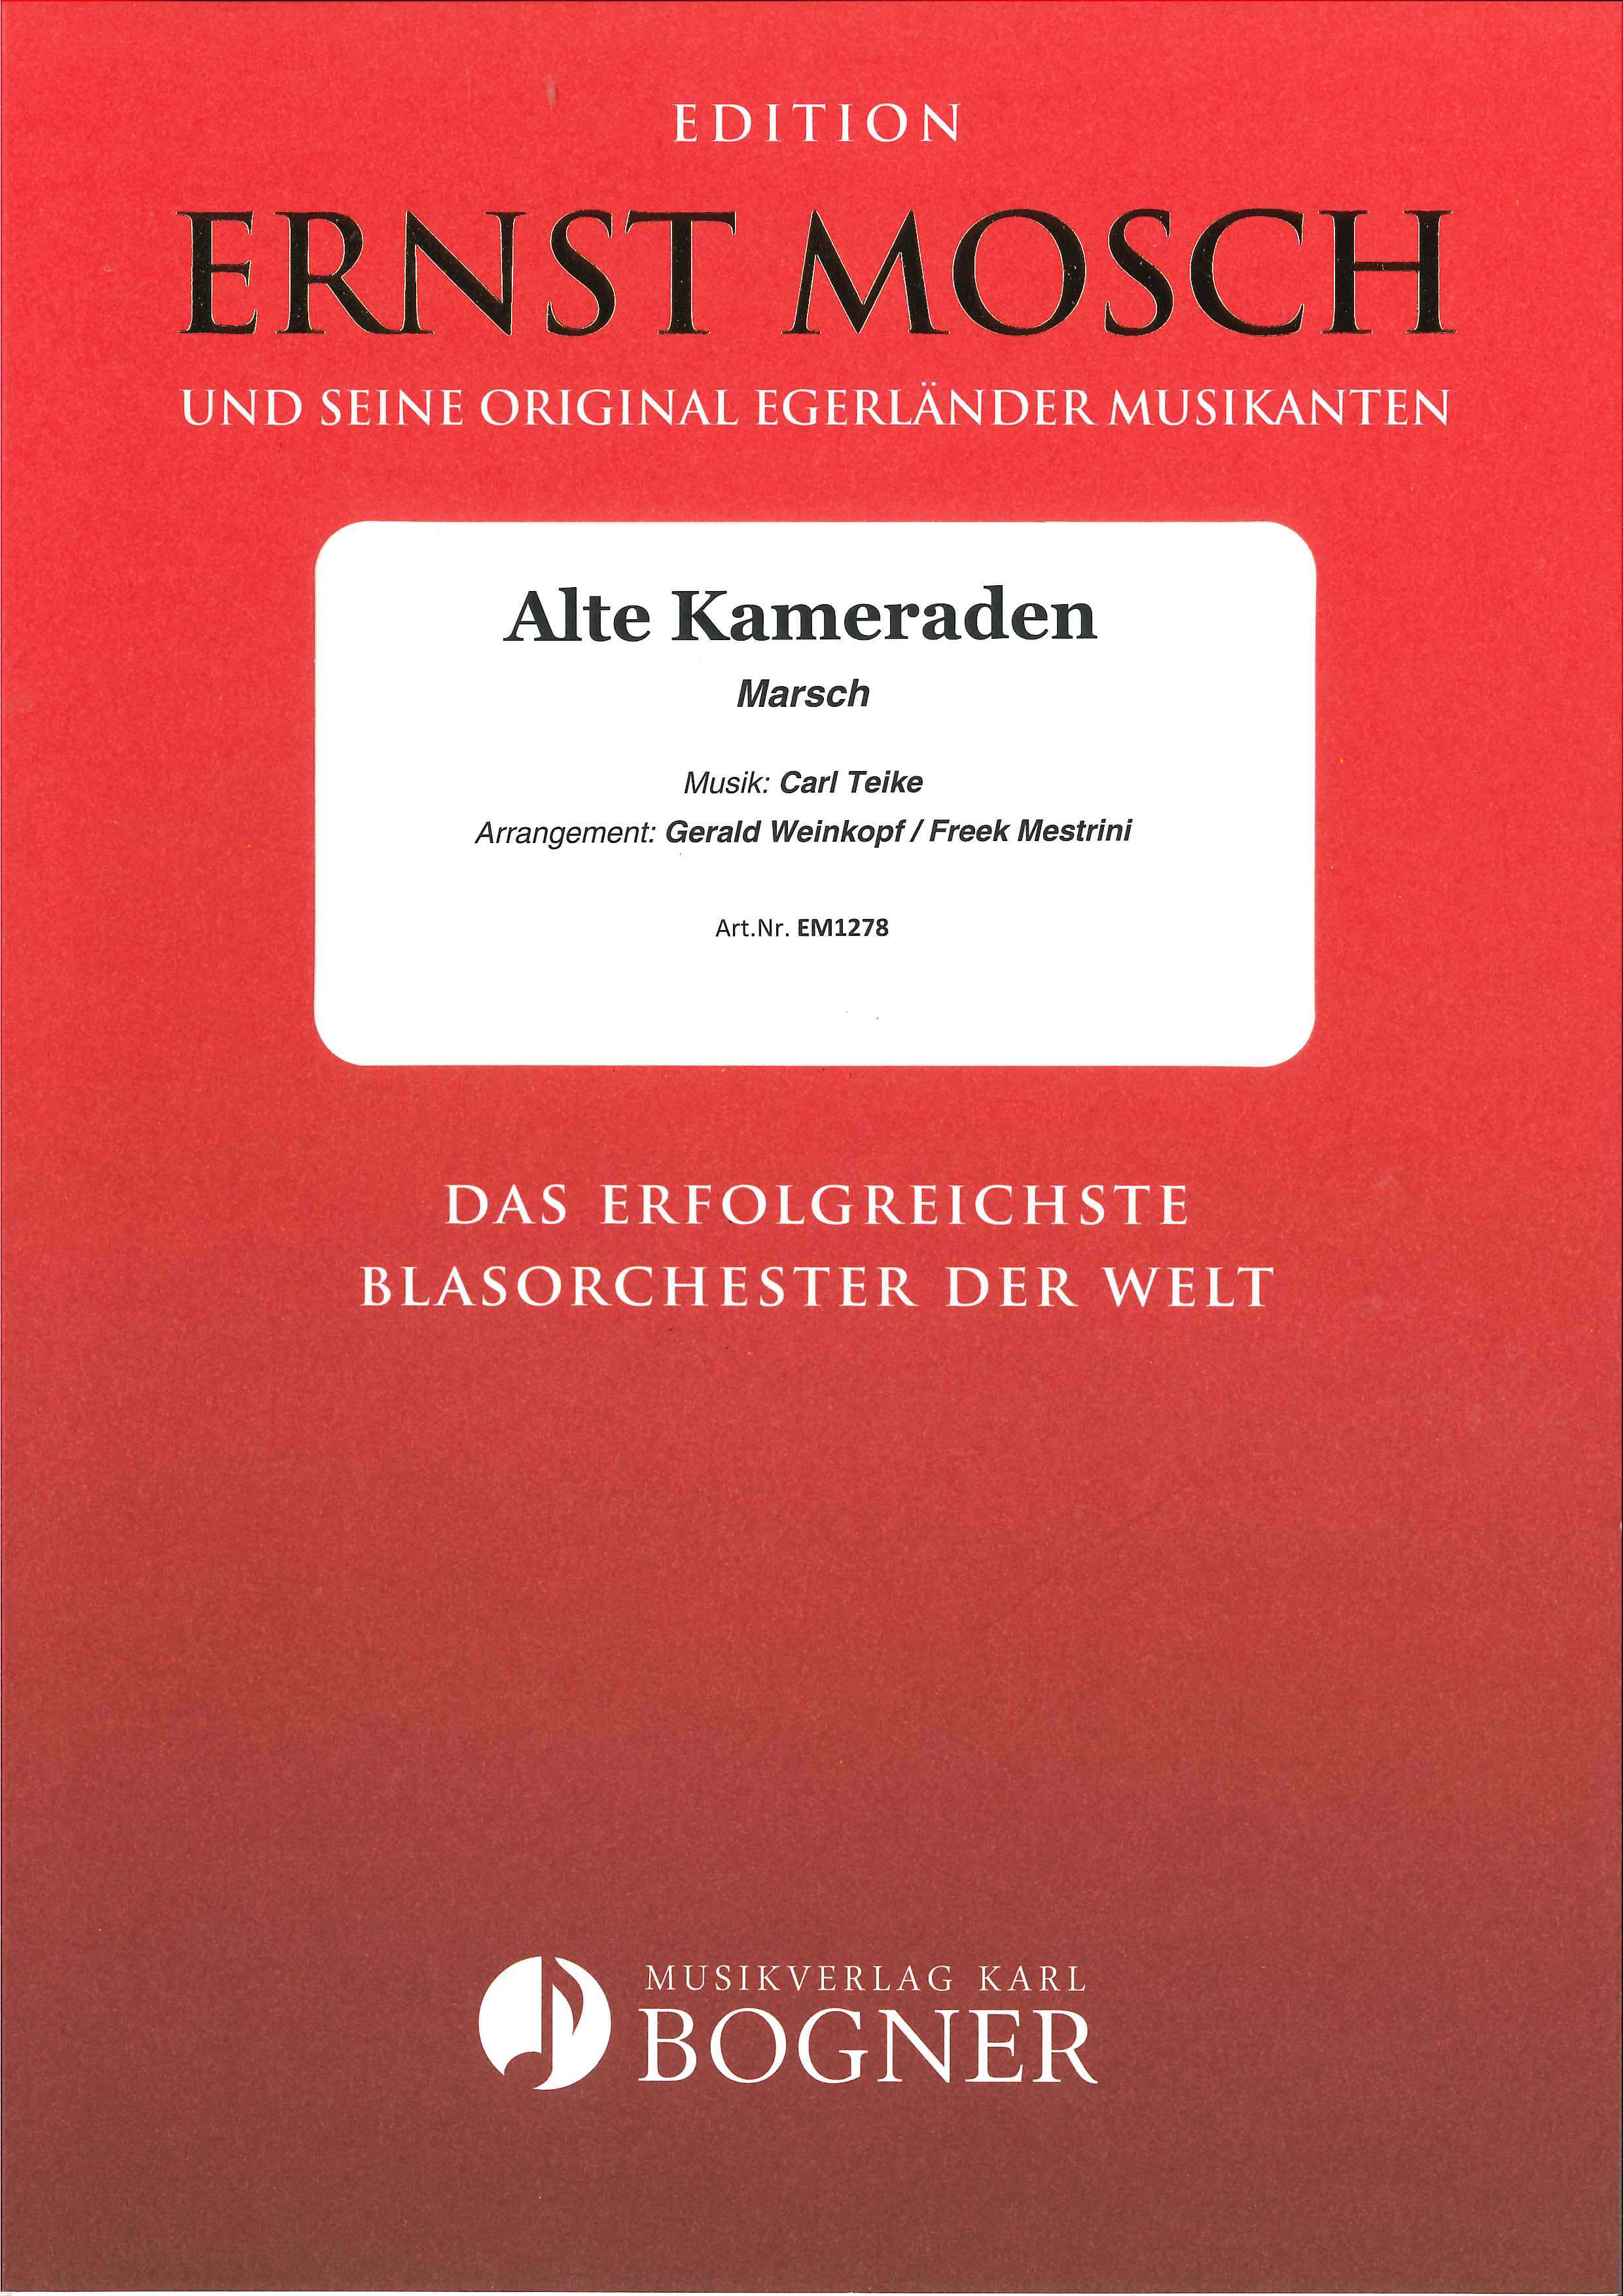 Blasorchesternoten Alte Kameraden Cover